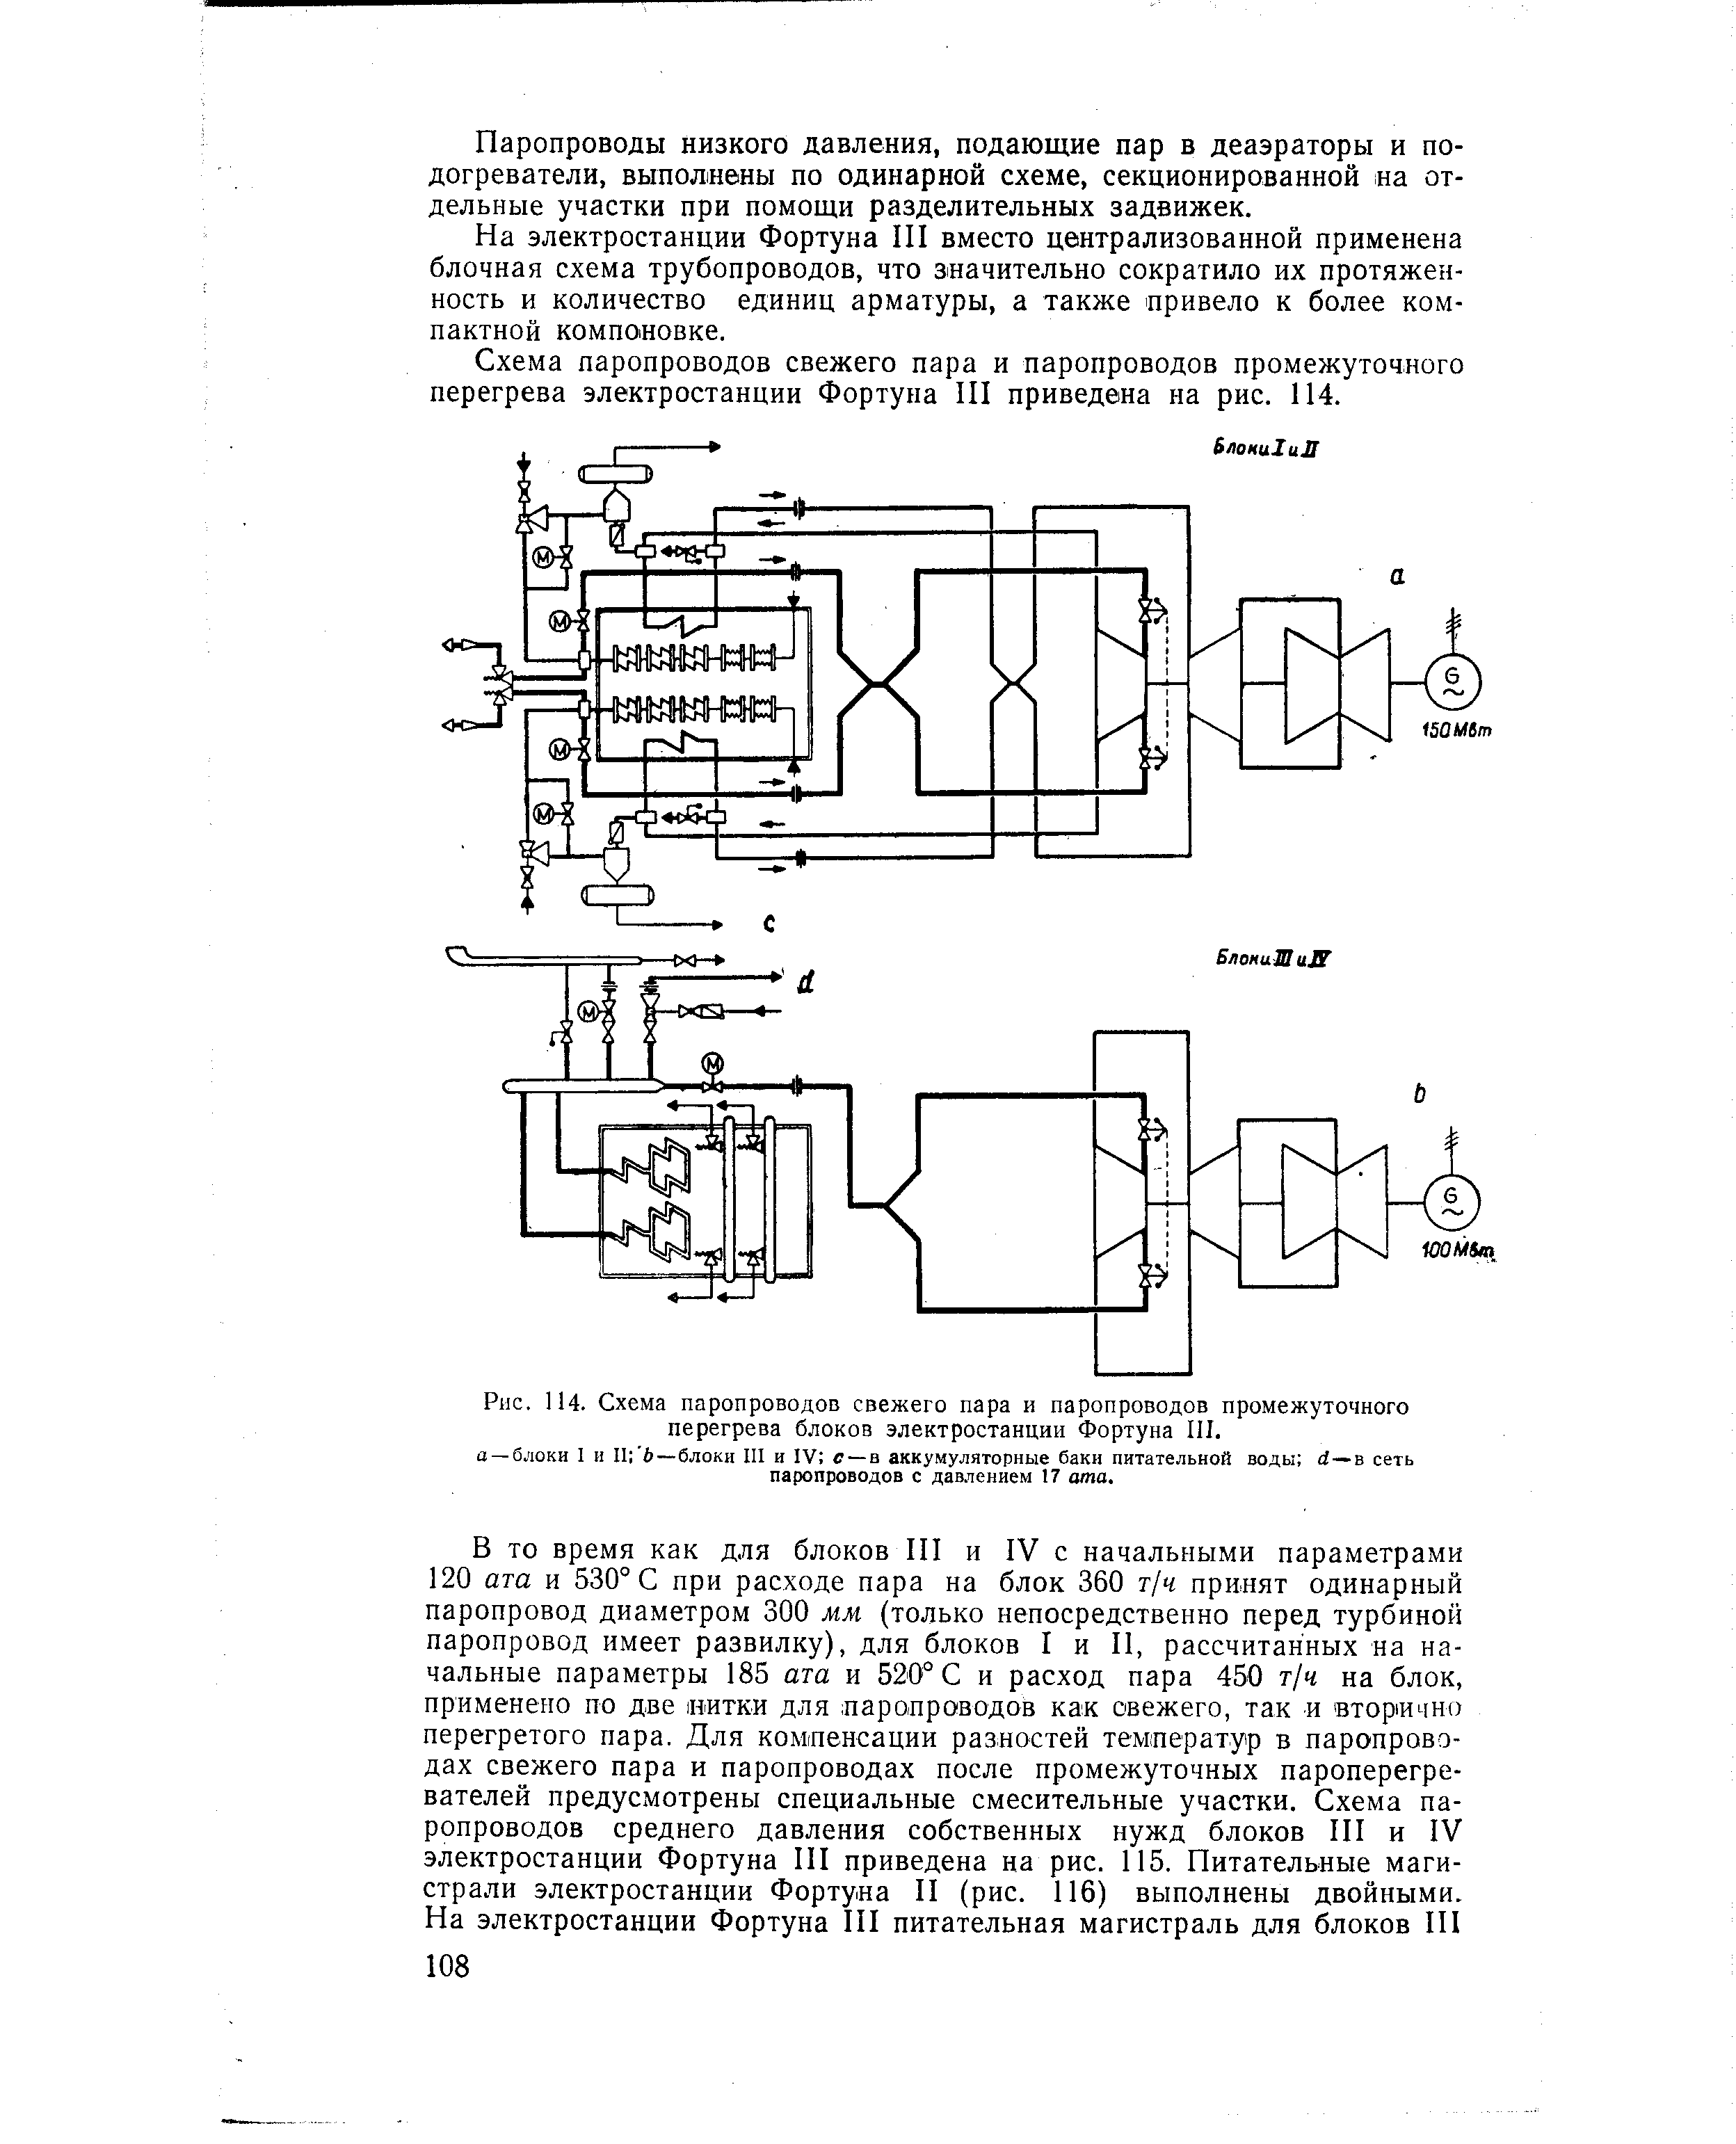 Рис. 114. Схема паропроводов свежего пара и паропроводов промежуточного перегрева блоков электростанции Фортуна III.
